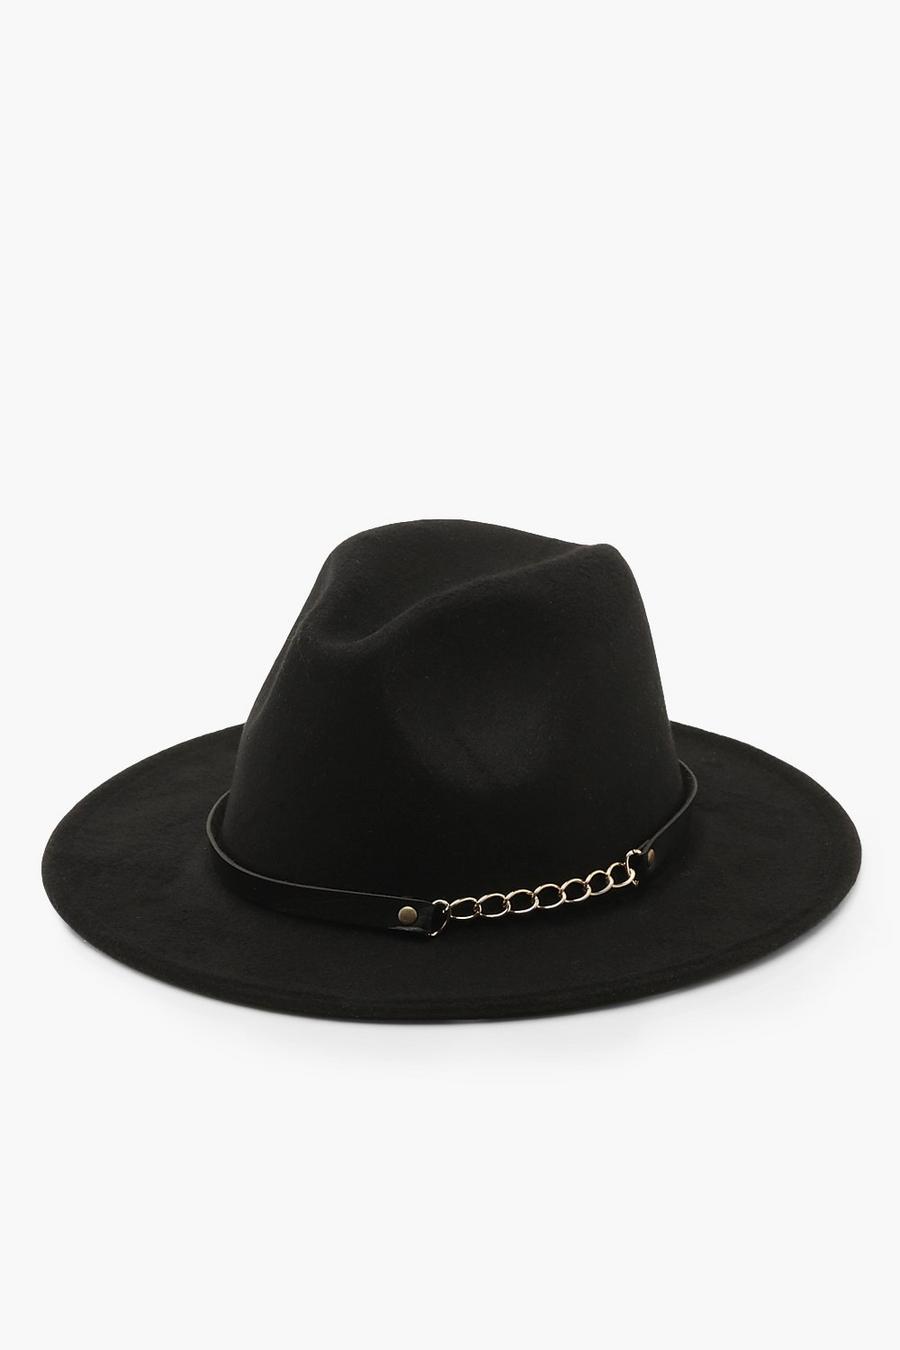 שחור black כובע פדורה עם שרשרת image number 1